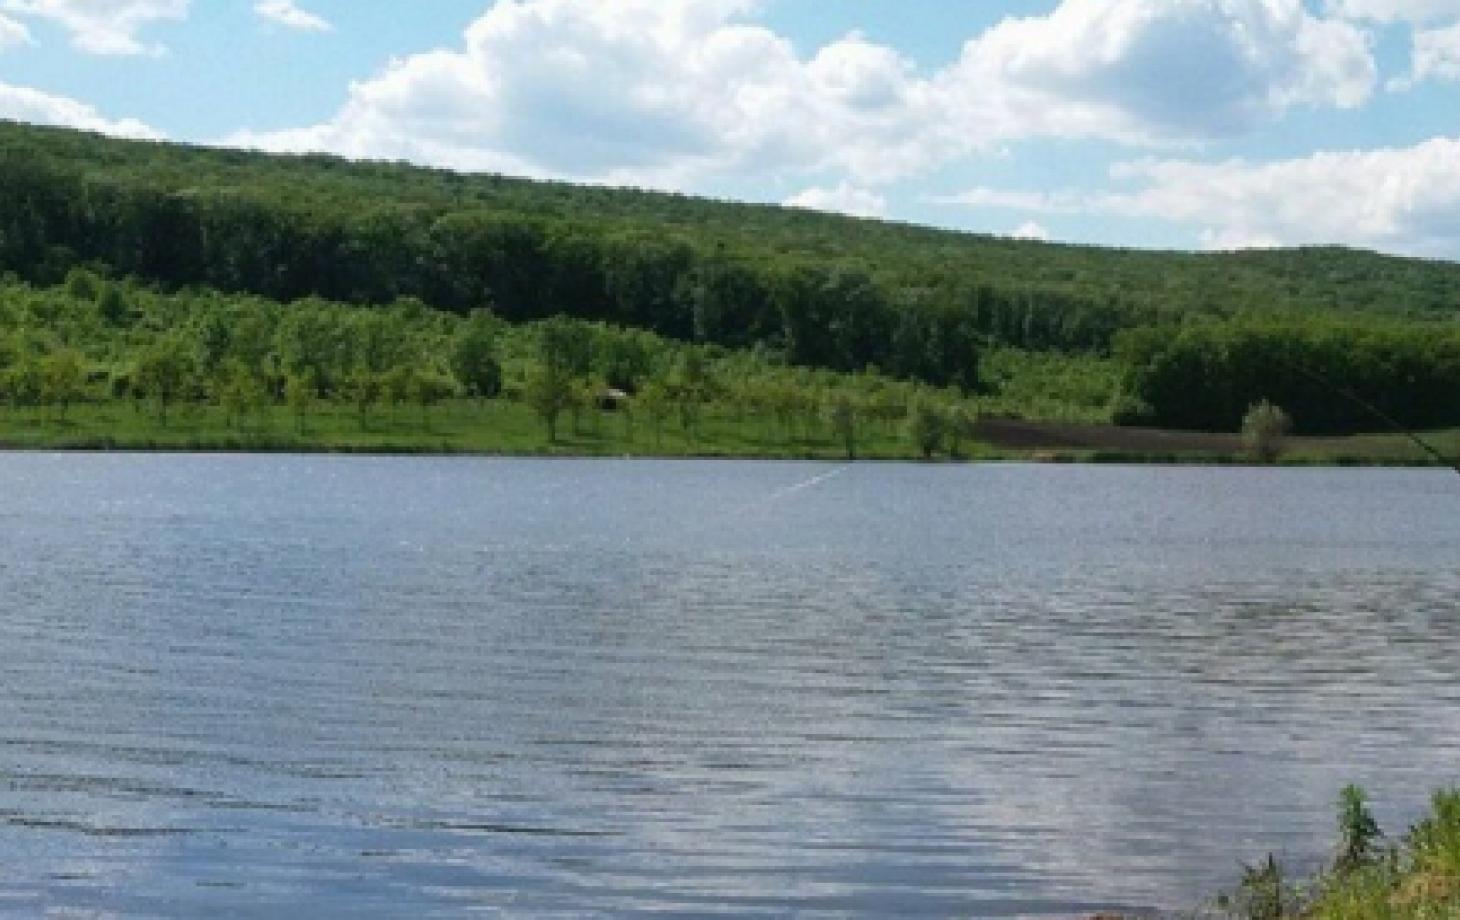 Regimul juridic al lacurilor și iazurilor va fi stabilit în baza noilor prevederi